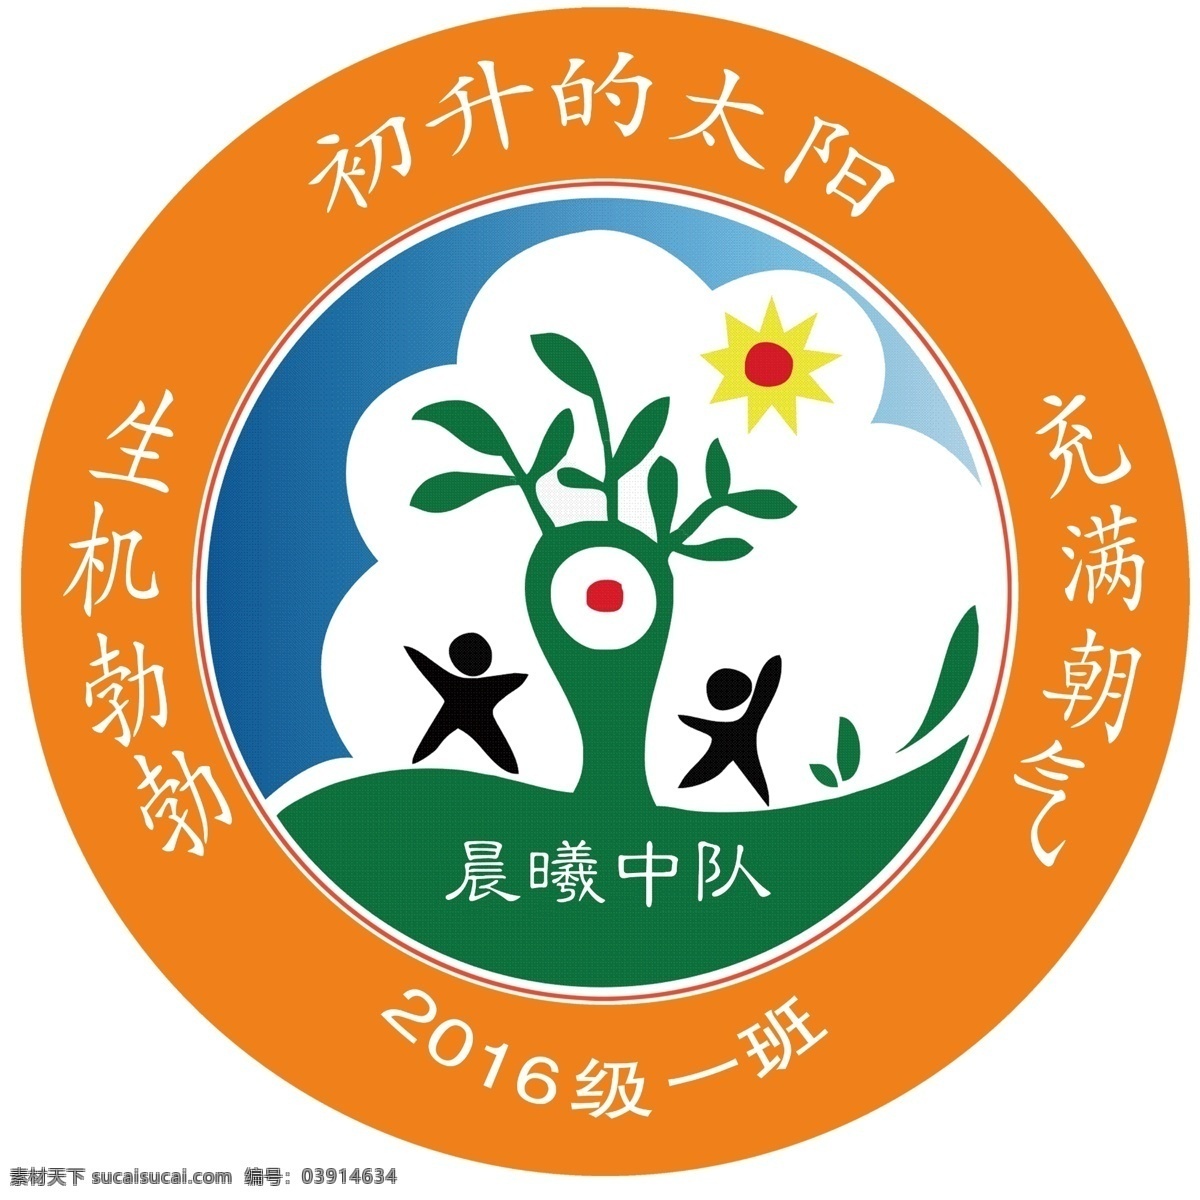 学校logo 班徽 晨曦中队 卡通树 太阳 logo设计